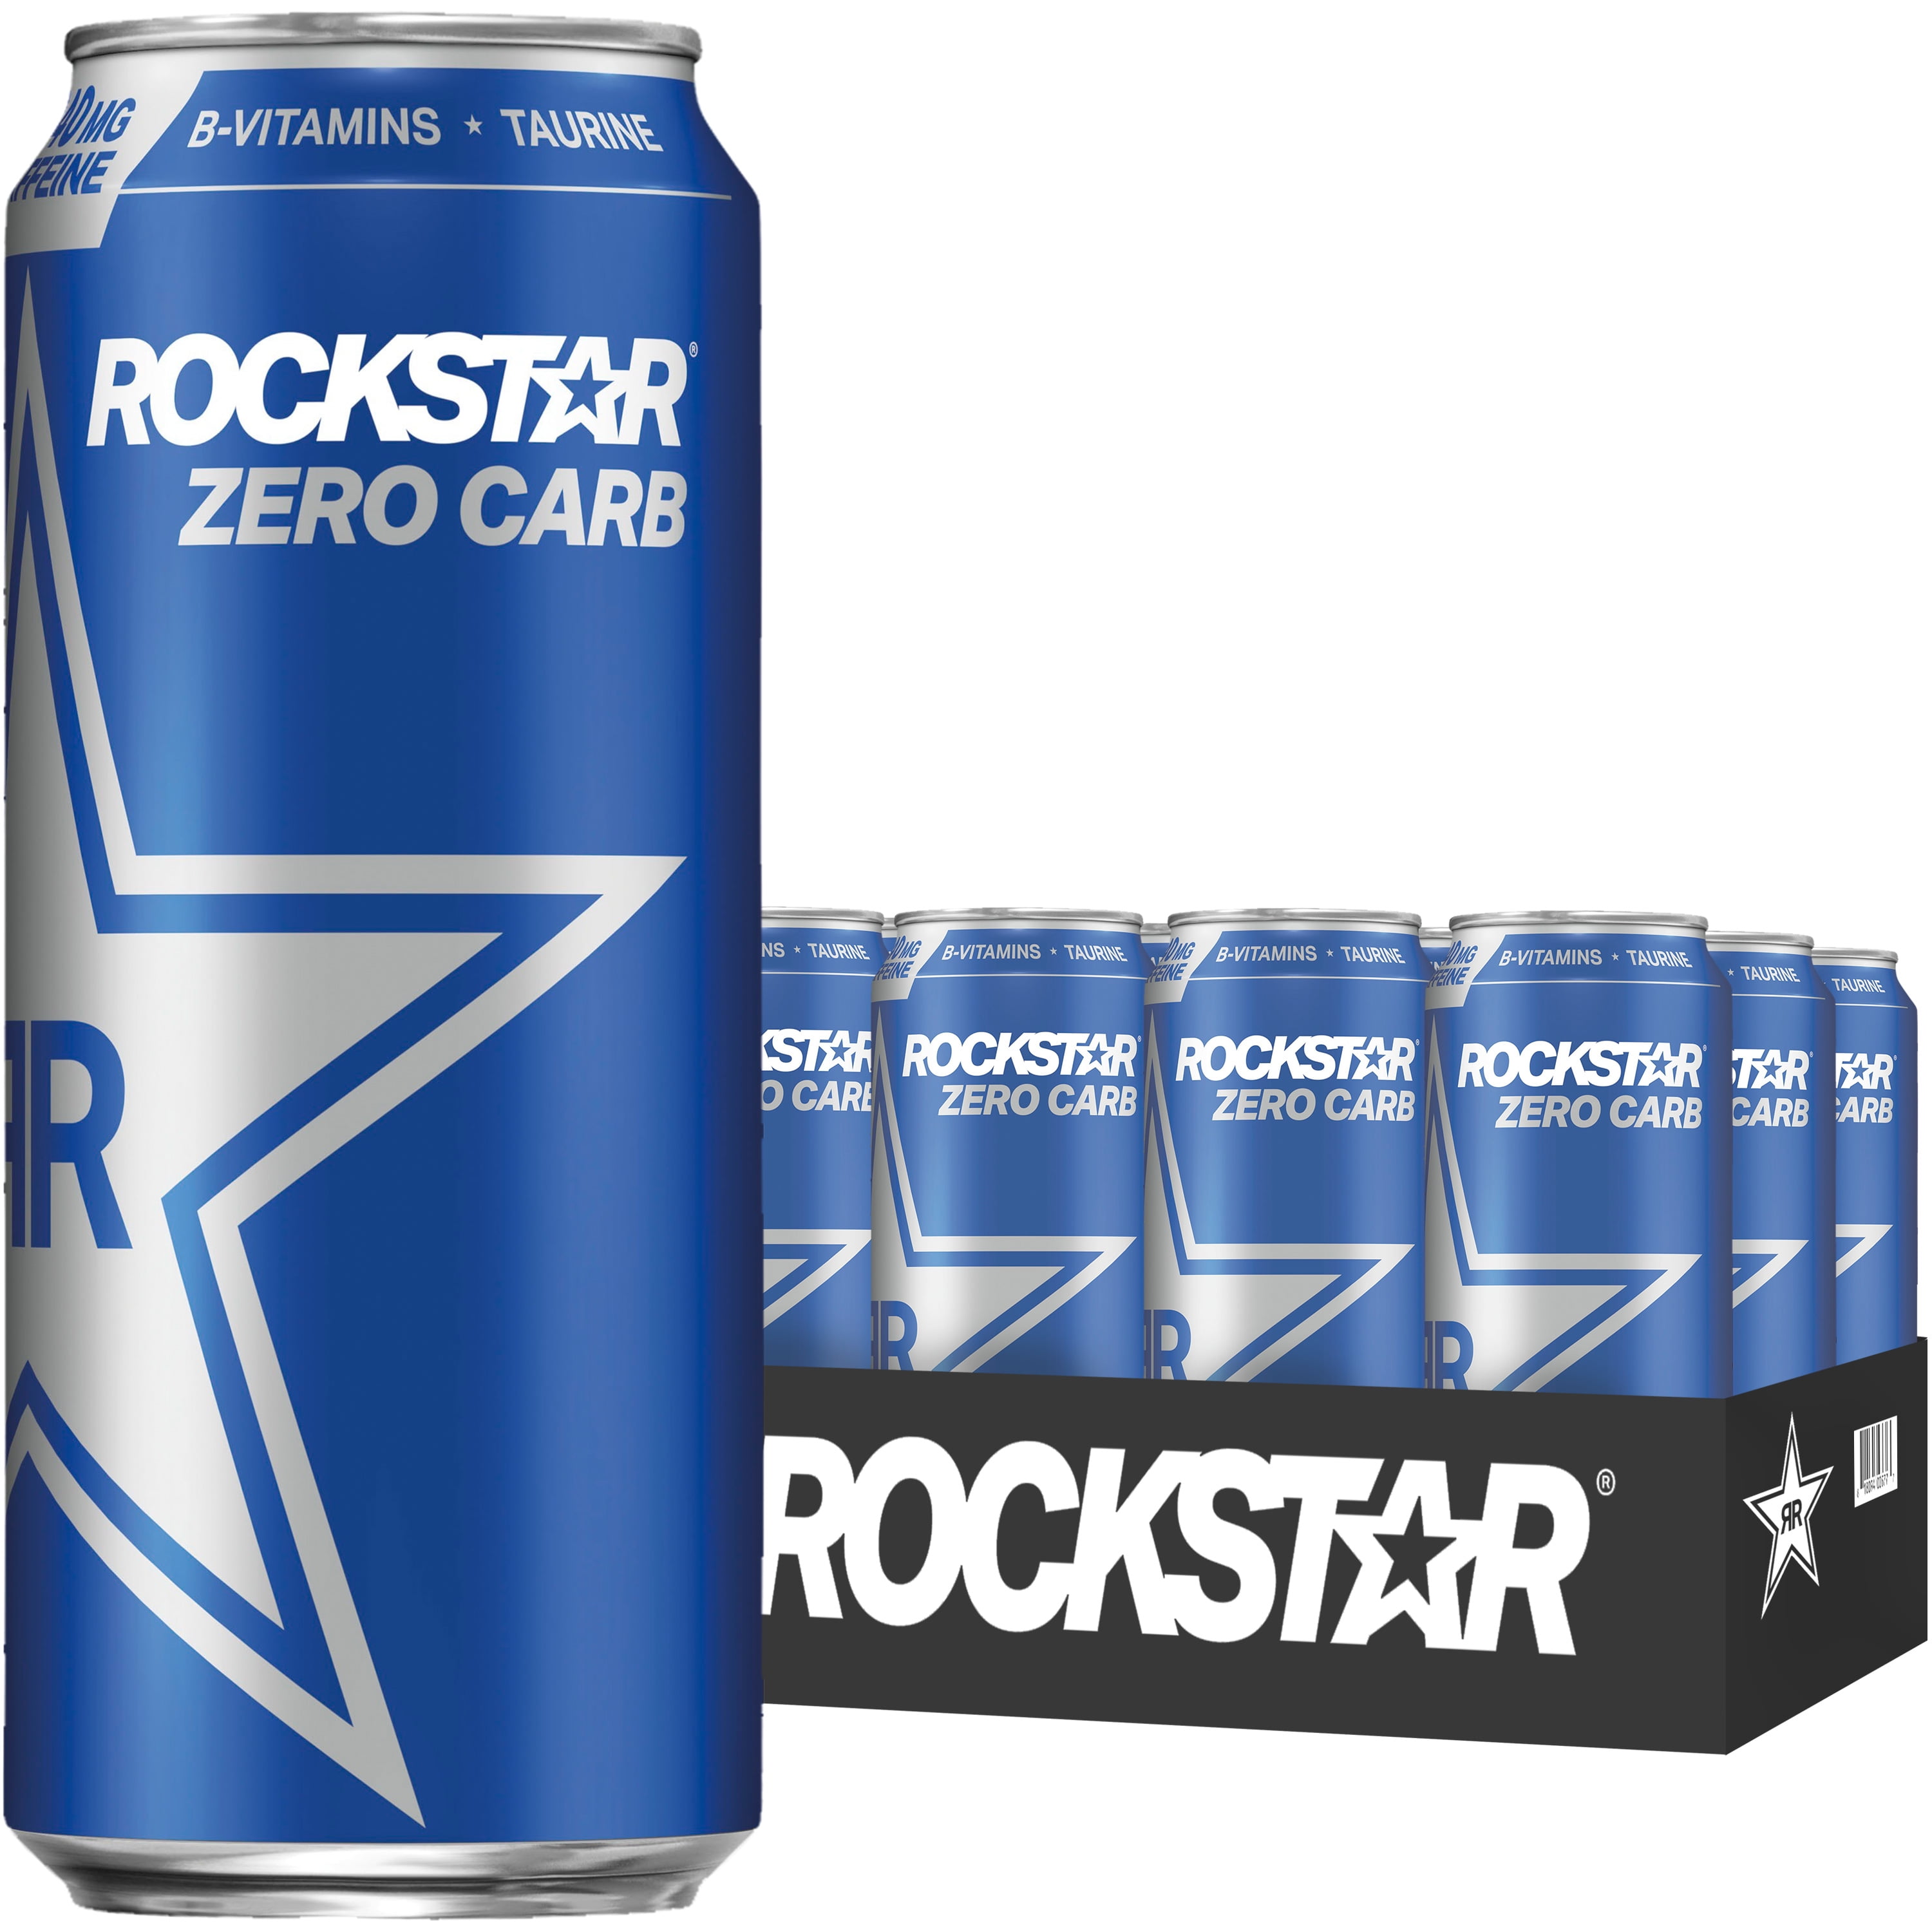 (12 Cans) Rockstar Zero Carb Energy Drink, 16 fl oz